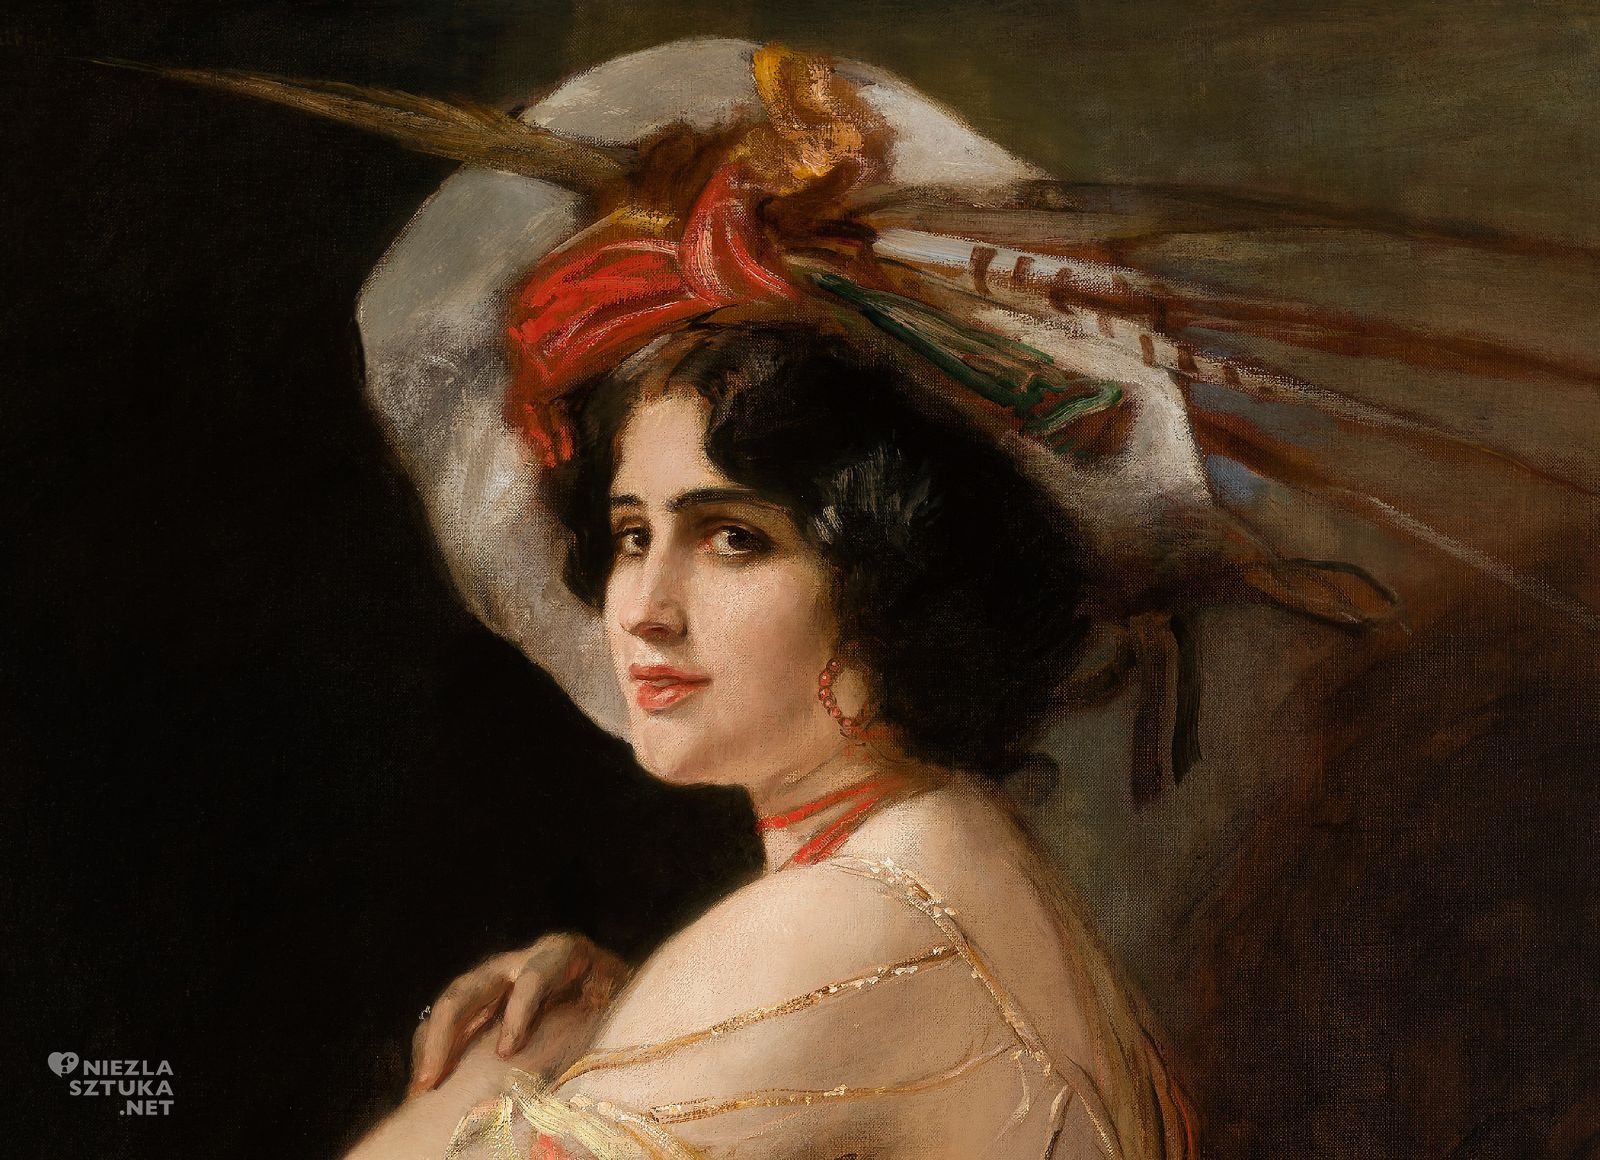 Friedrich August von Kaulbach, Rosaria Guerrero jako Carmen, olej, płótno, sztuka niemiecka, portret, portret kobiety, niezła sztuka